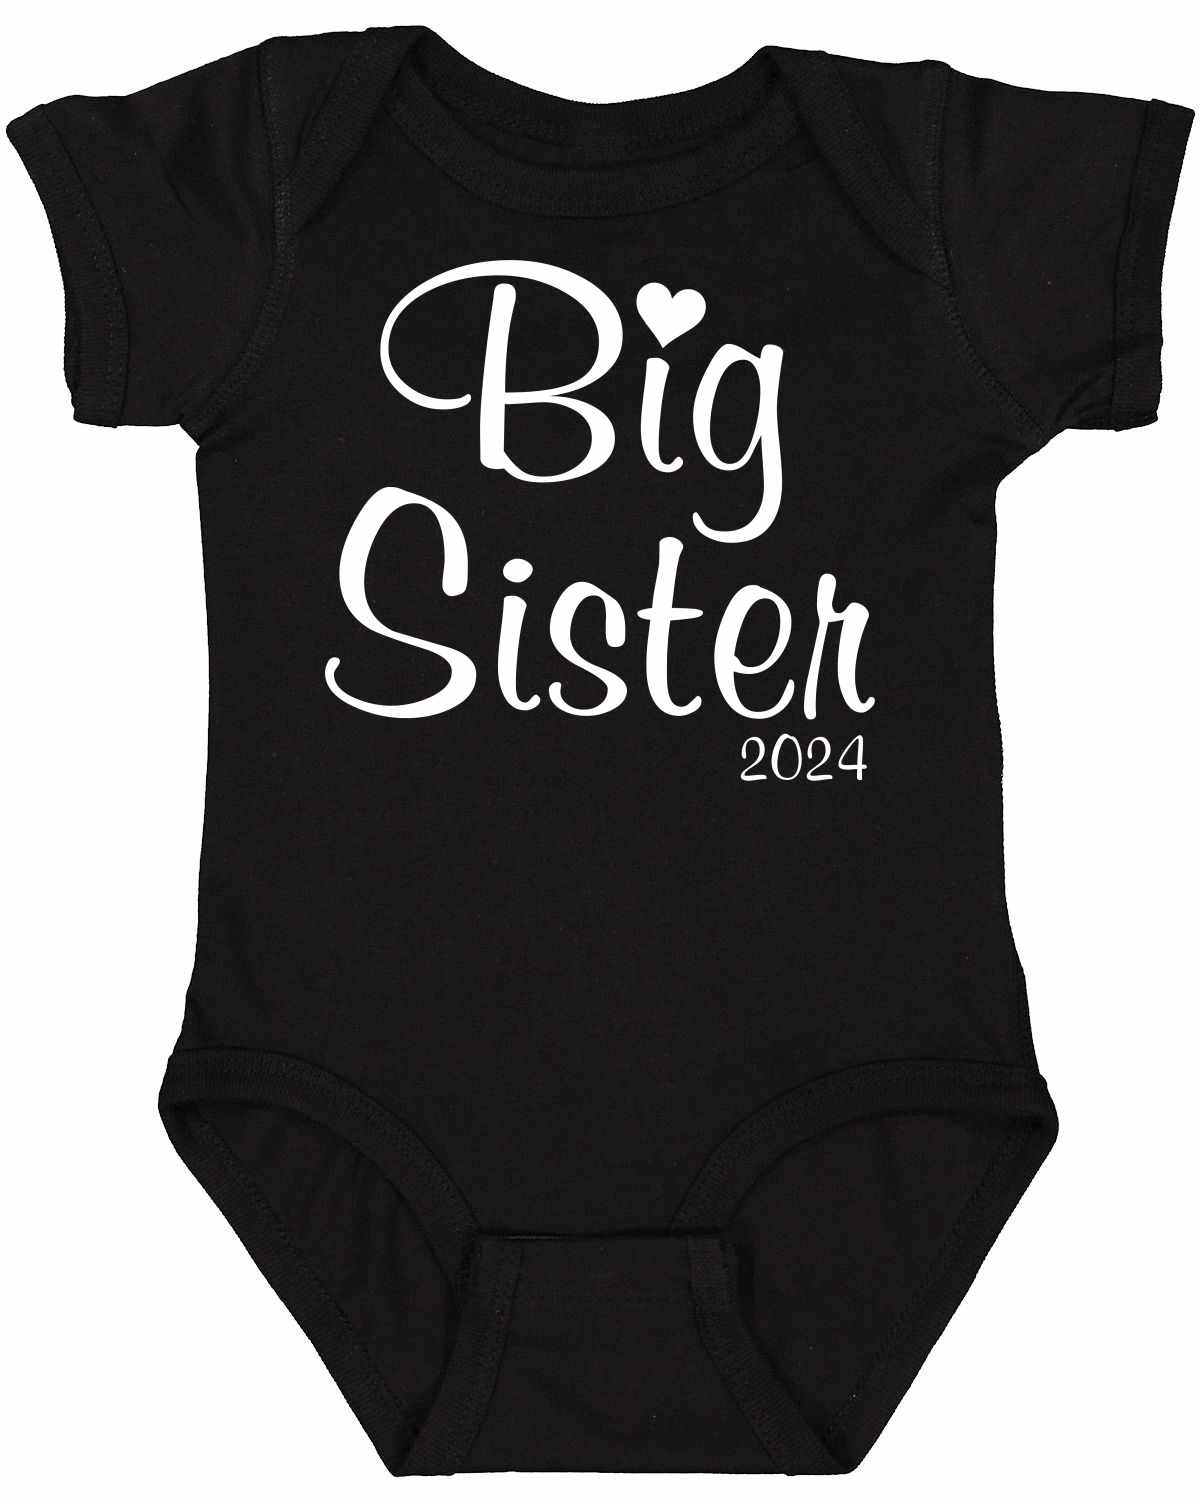 Big Sister 2024 on Infant BodySuit (#1367-10)